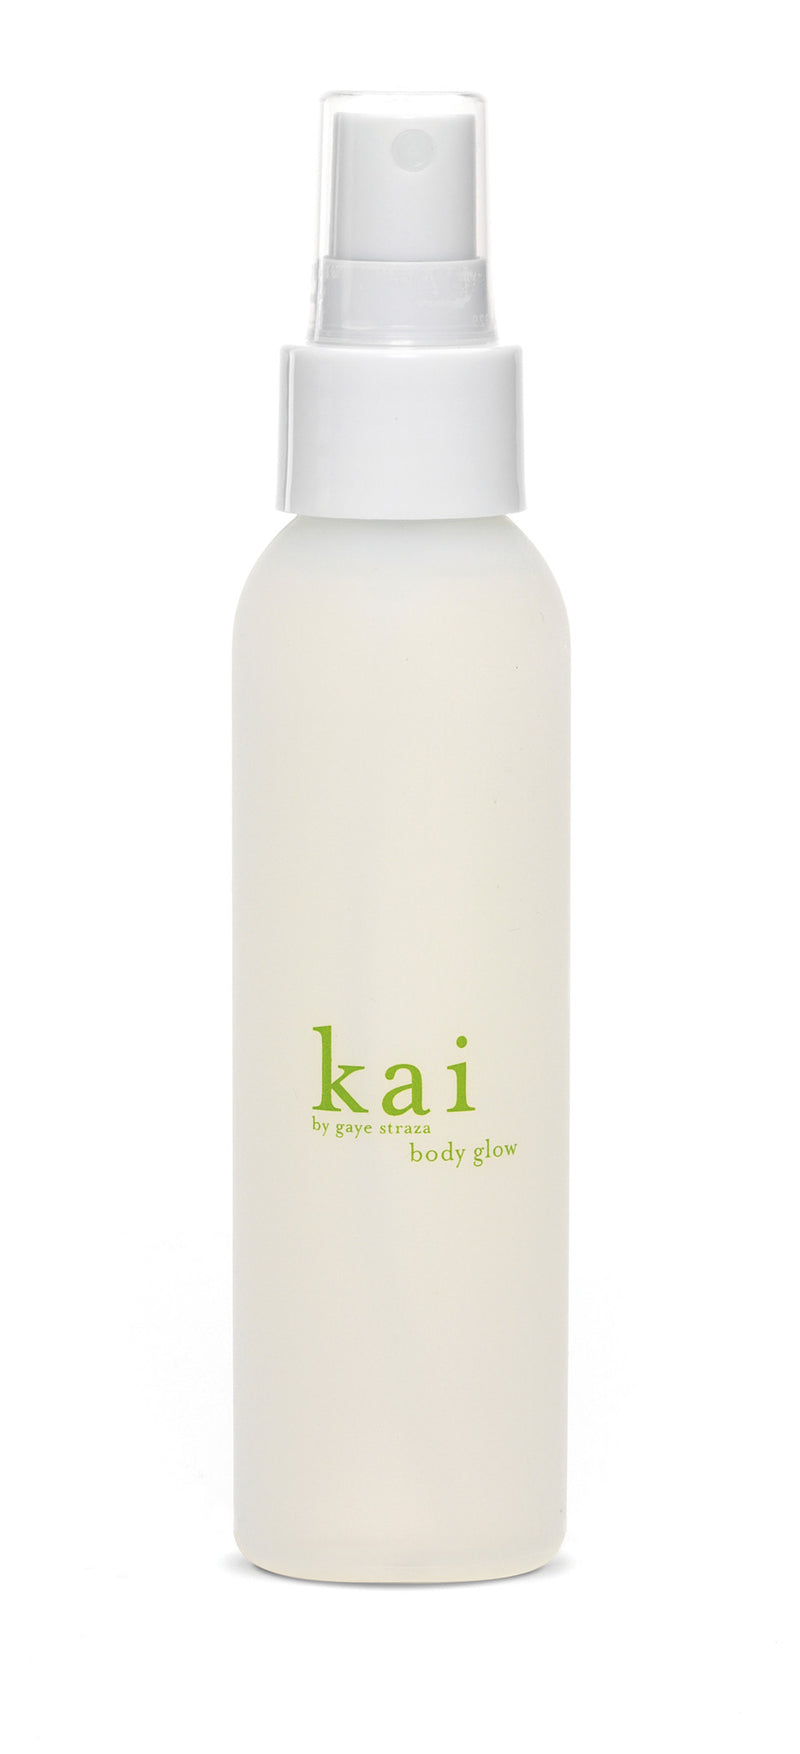 media image for kai body glow design by kai fragrance 1 289